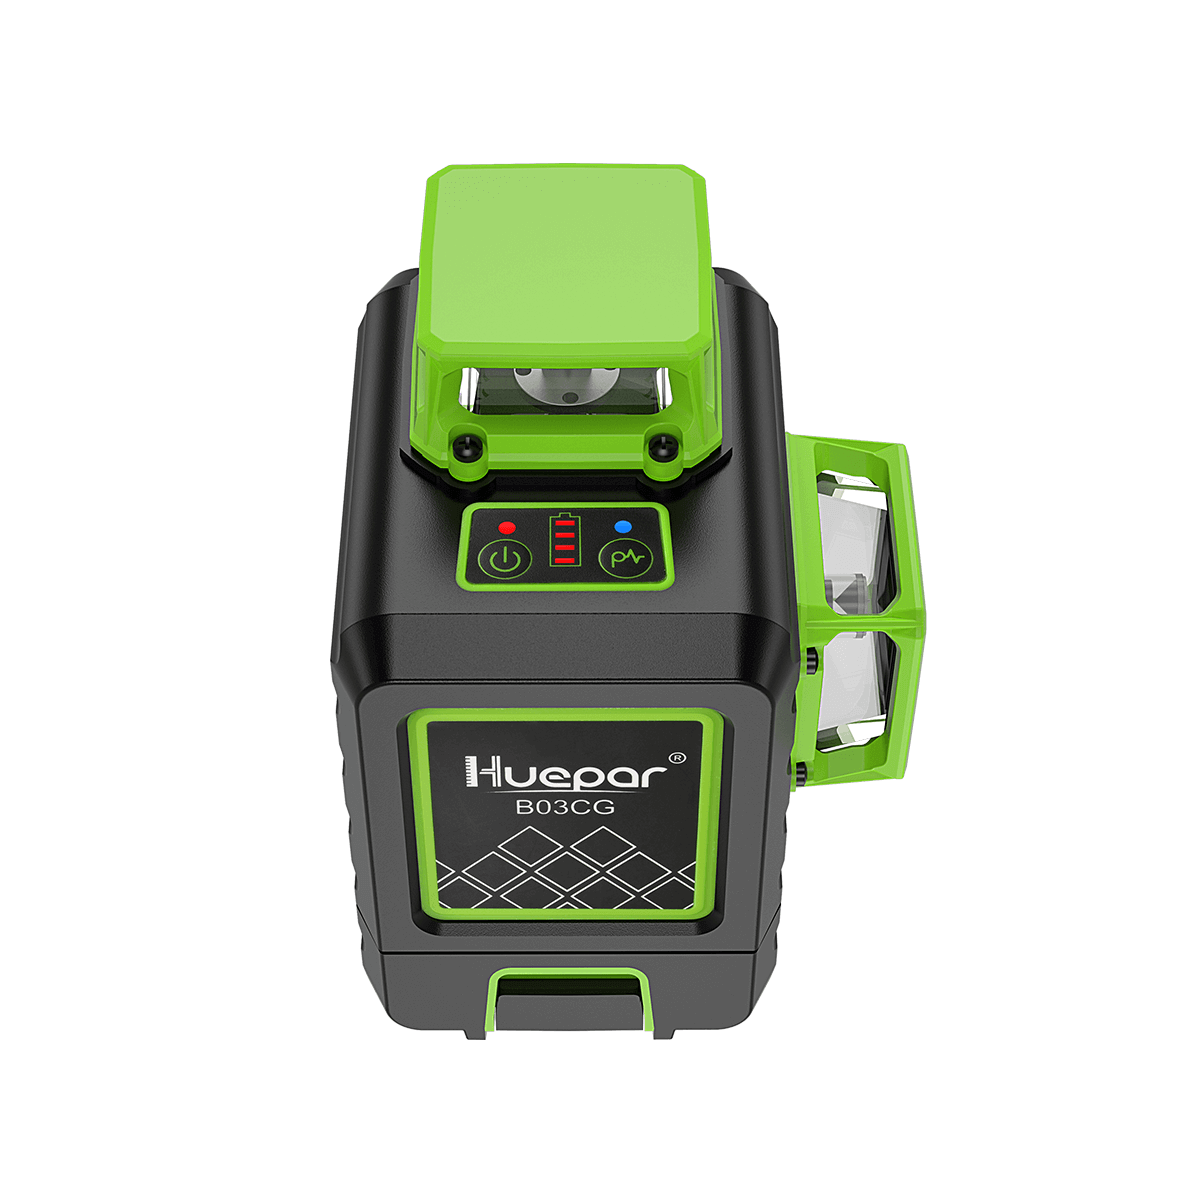  Huepar Nivel láser de línea cruzada verde 3x360 con modo de  pulso, batería de iones de litio, estuche rígido : Herramientas y Mejoras  del Hogar